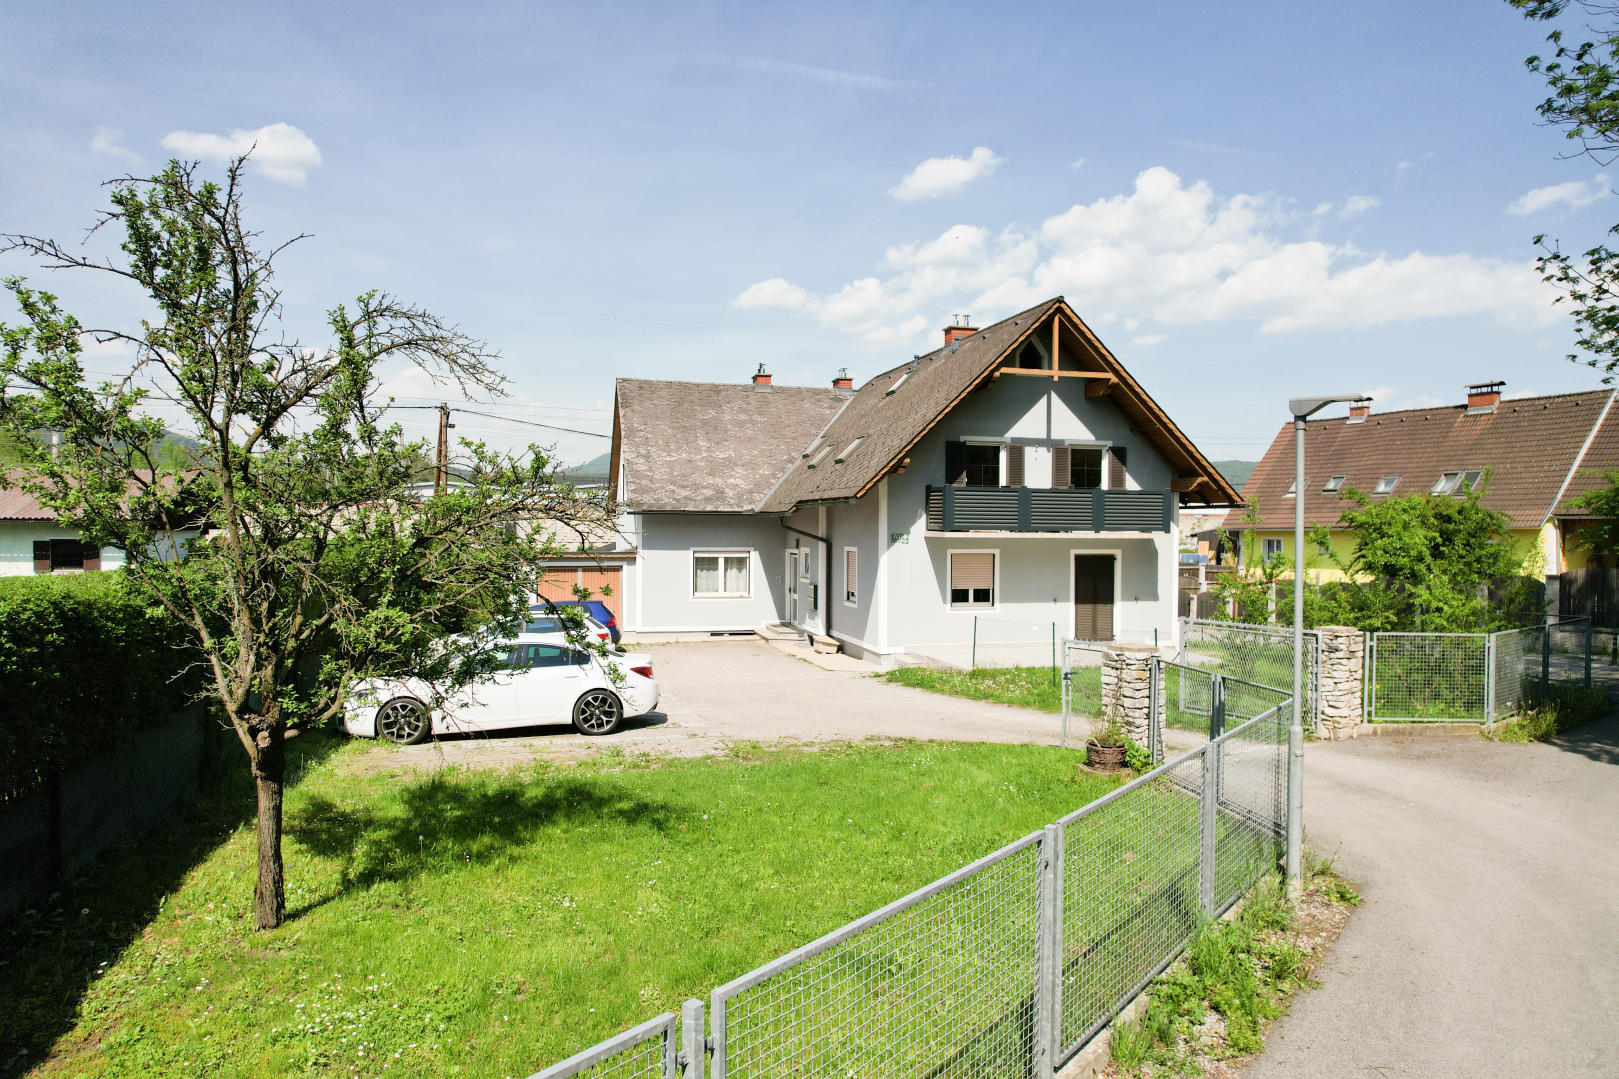 Zinshaus/Renditeobjekt/Gewerbeobjekt zum Kaufen: Judendorfer Straße 70, 8112 Gratwein - Zinshaus Gratwein - Judendorf (2)